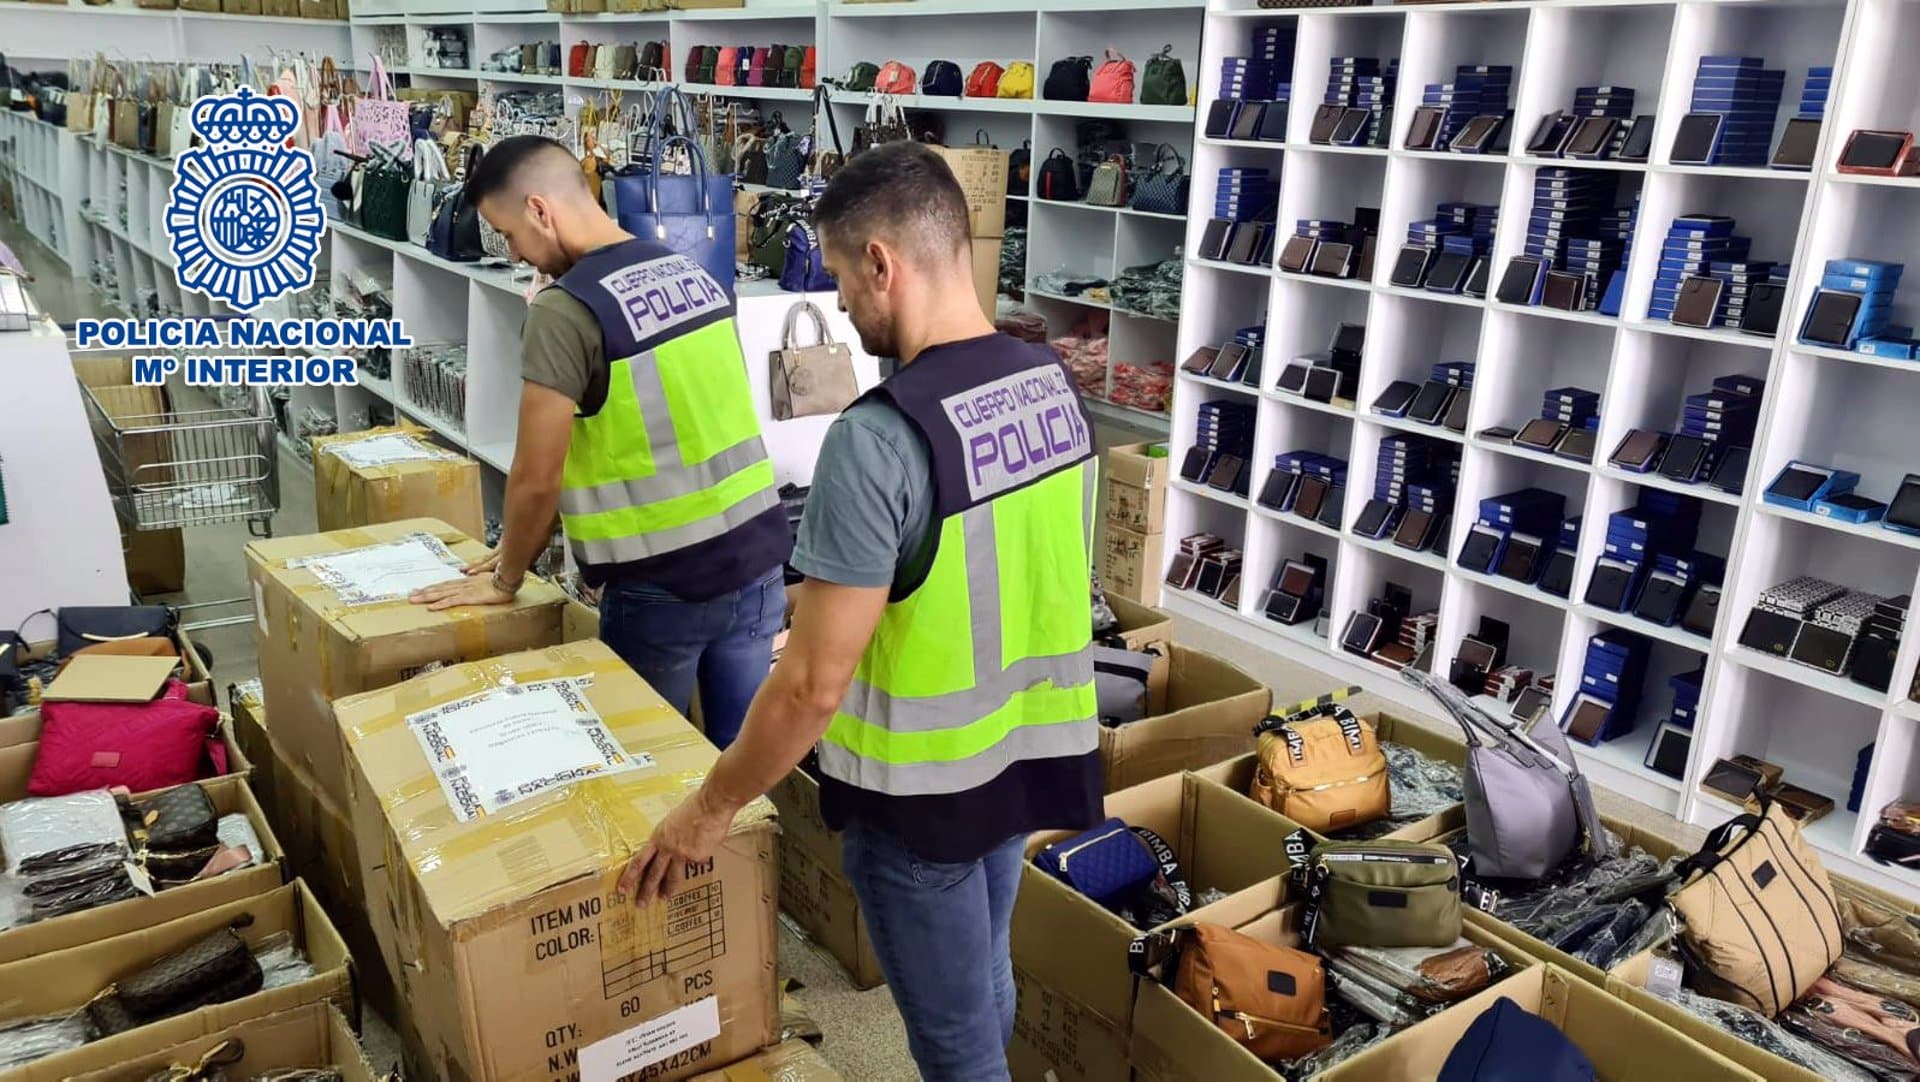 Intervienen cerca de 500 bolsos falsificados tras registrar seis naves industriales en Elche